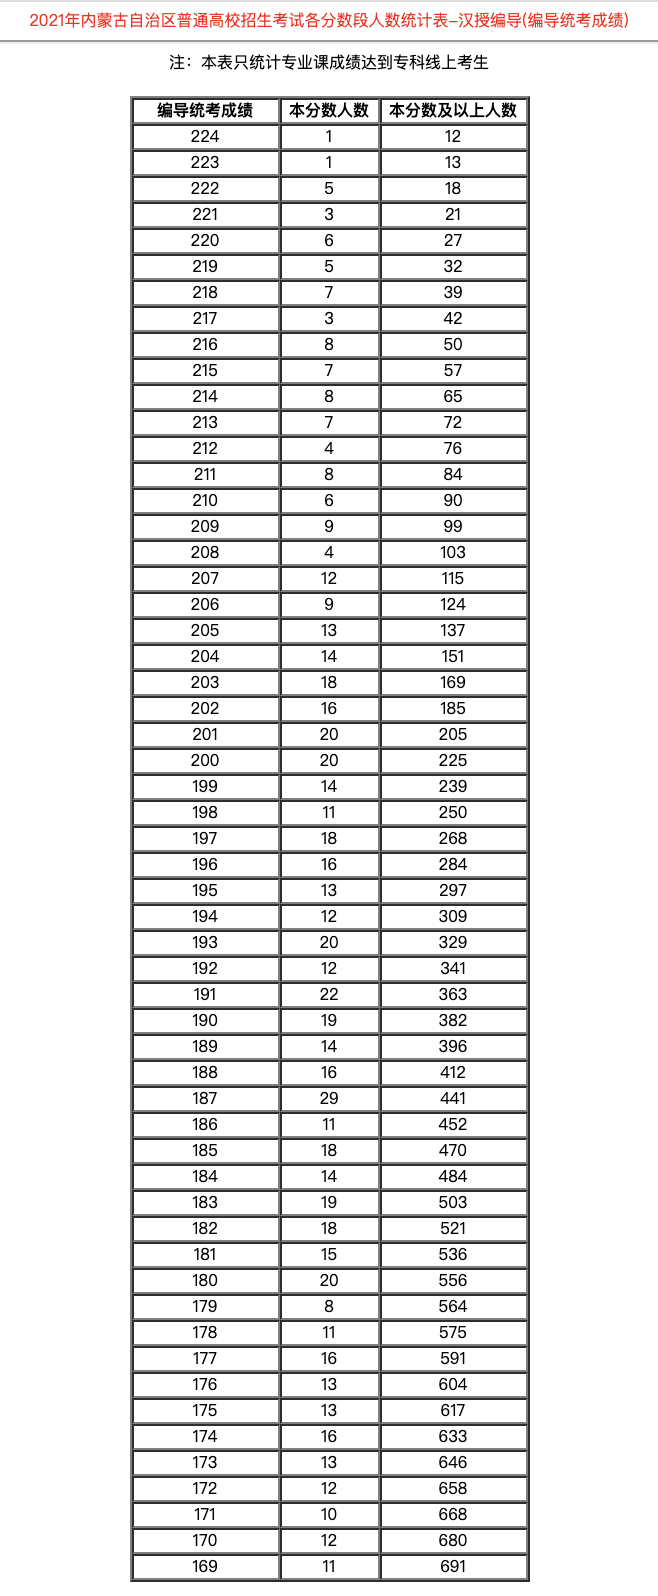 内蒙古：2021年普通高校招生考试各分数段人数统计表-汉授编导(编导统考成绩)